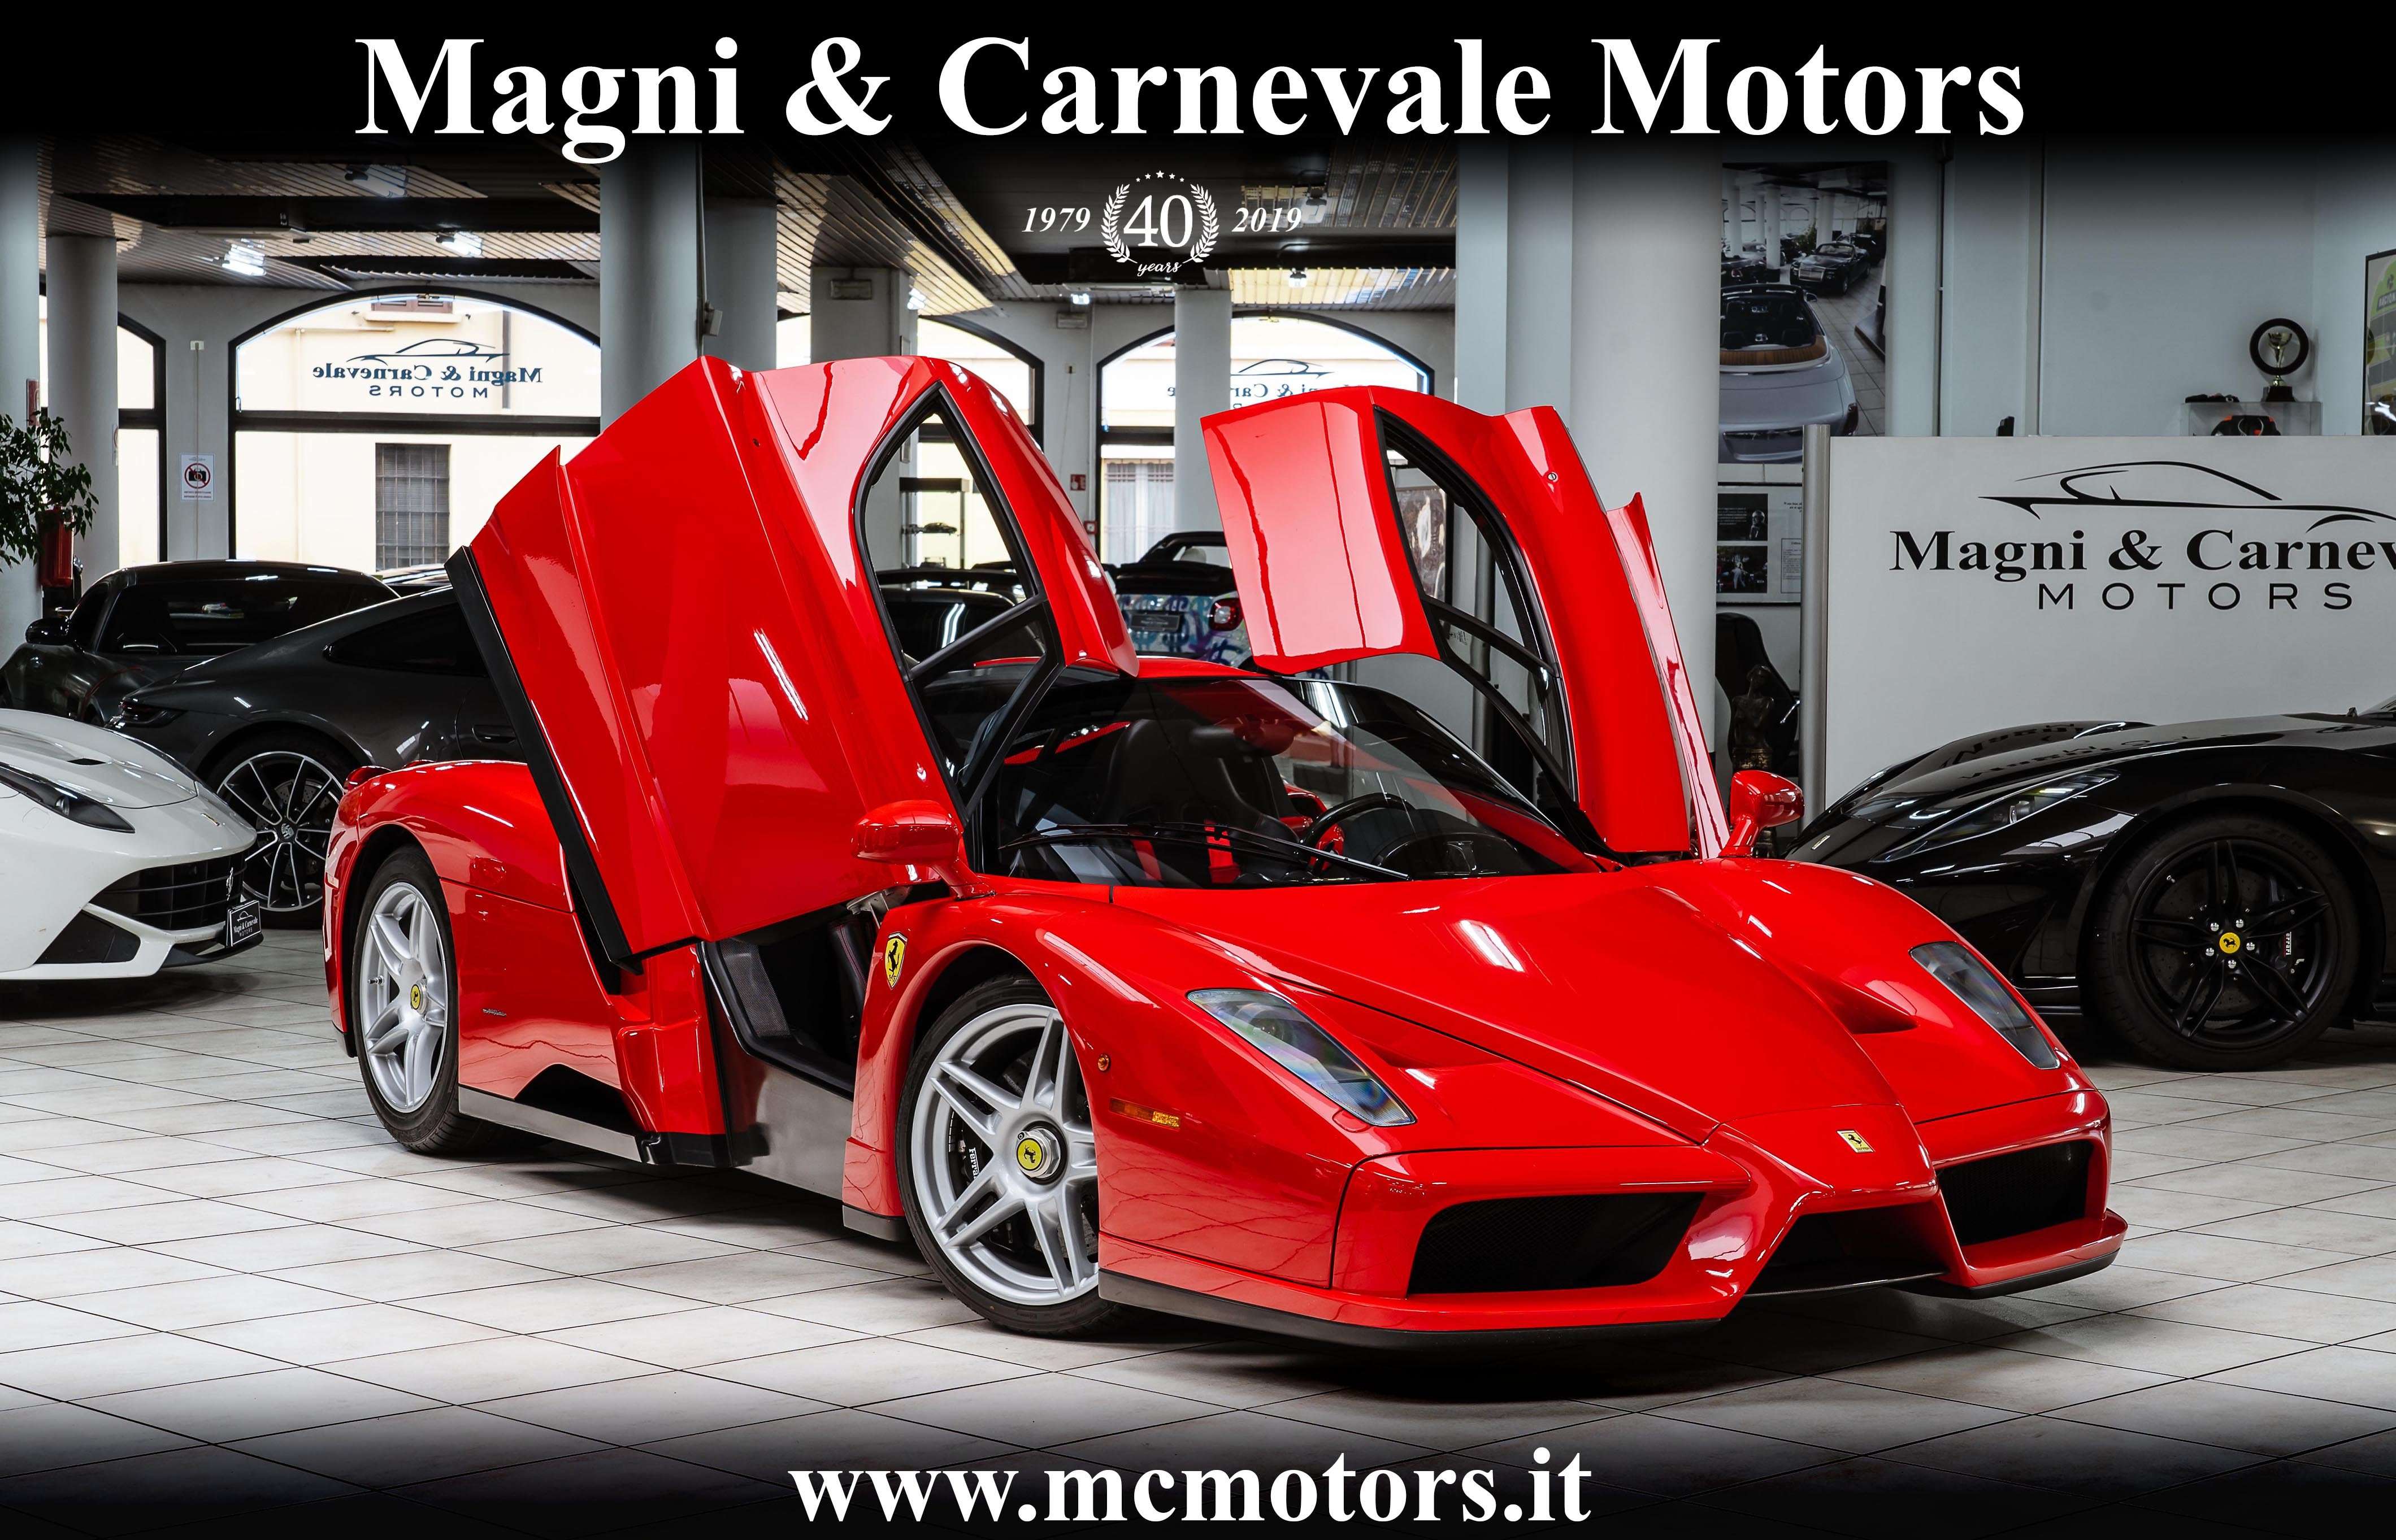 Ferrari Enzo Ferrari Coupe in Red used in Sesto San Giovanni - Milano - Mi for € 4,350,000.-